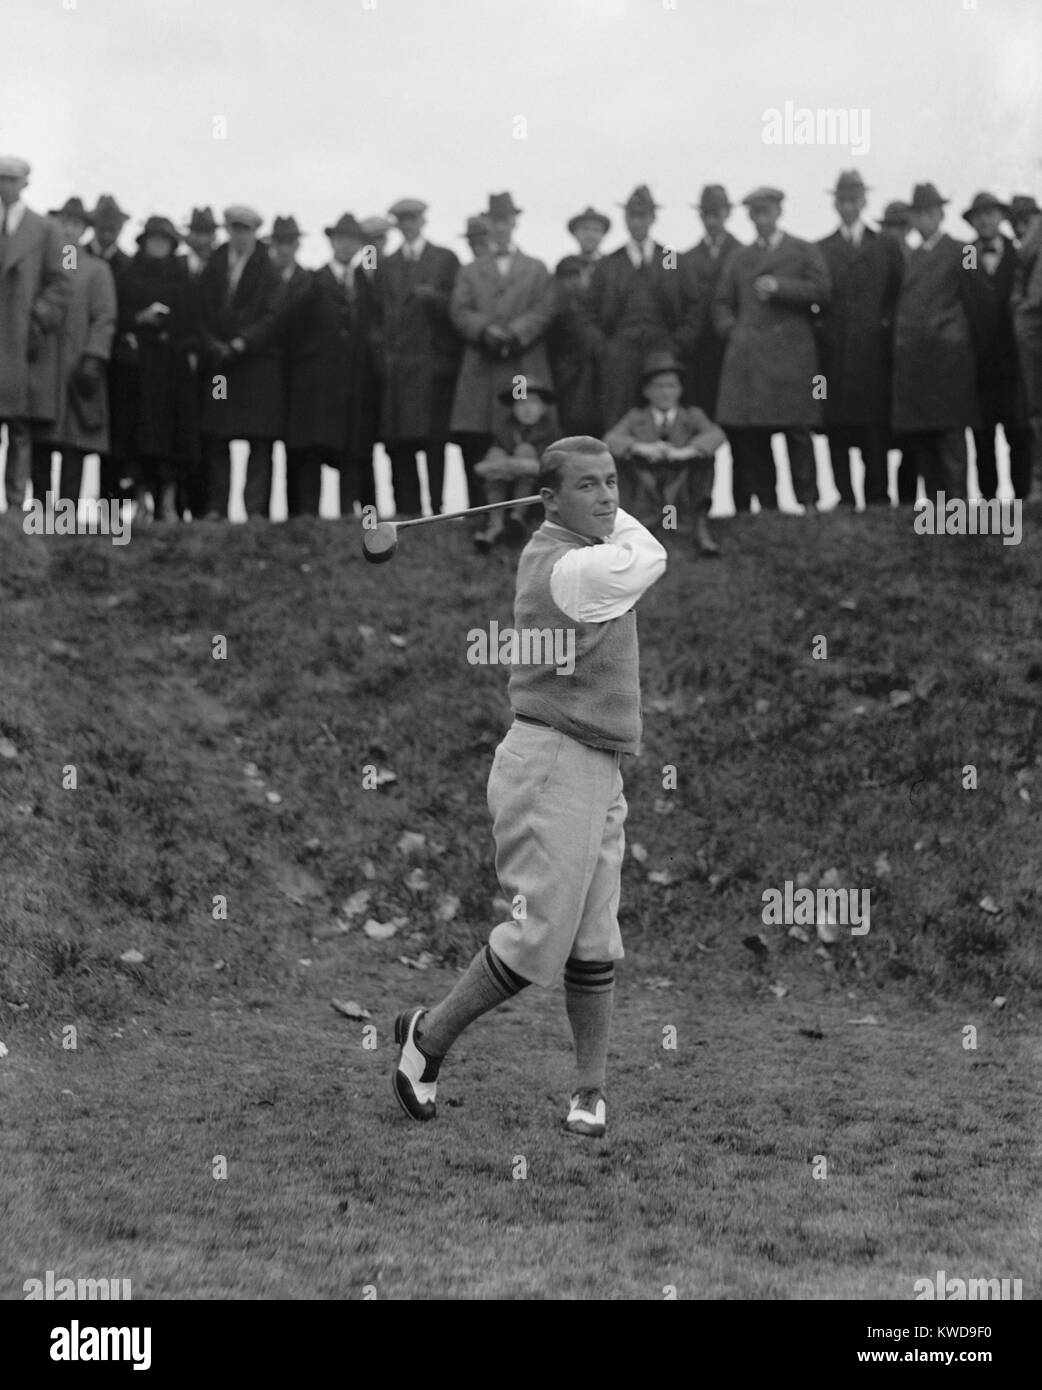 Amerikanischer professioneller Golfspieler Gene Sarazen, Dez. 9, 1922. 1922 war sein Break-out-Jahr, er gewann die US Open und PGA Meisterschaft. (BSLOC 2015 17 120) Stockfoto